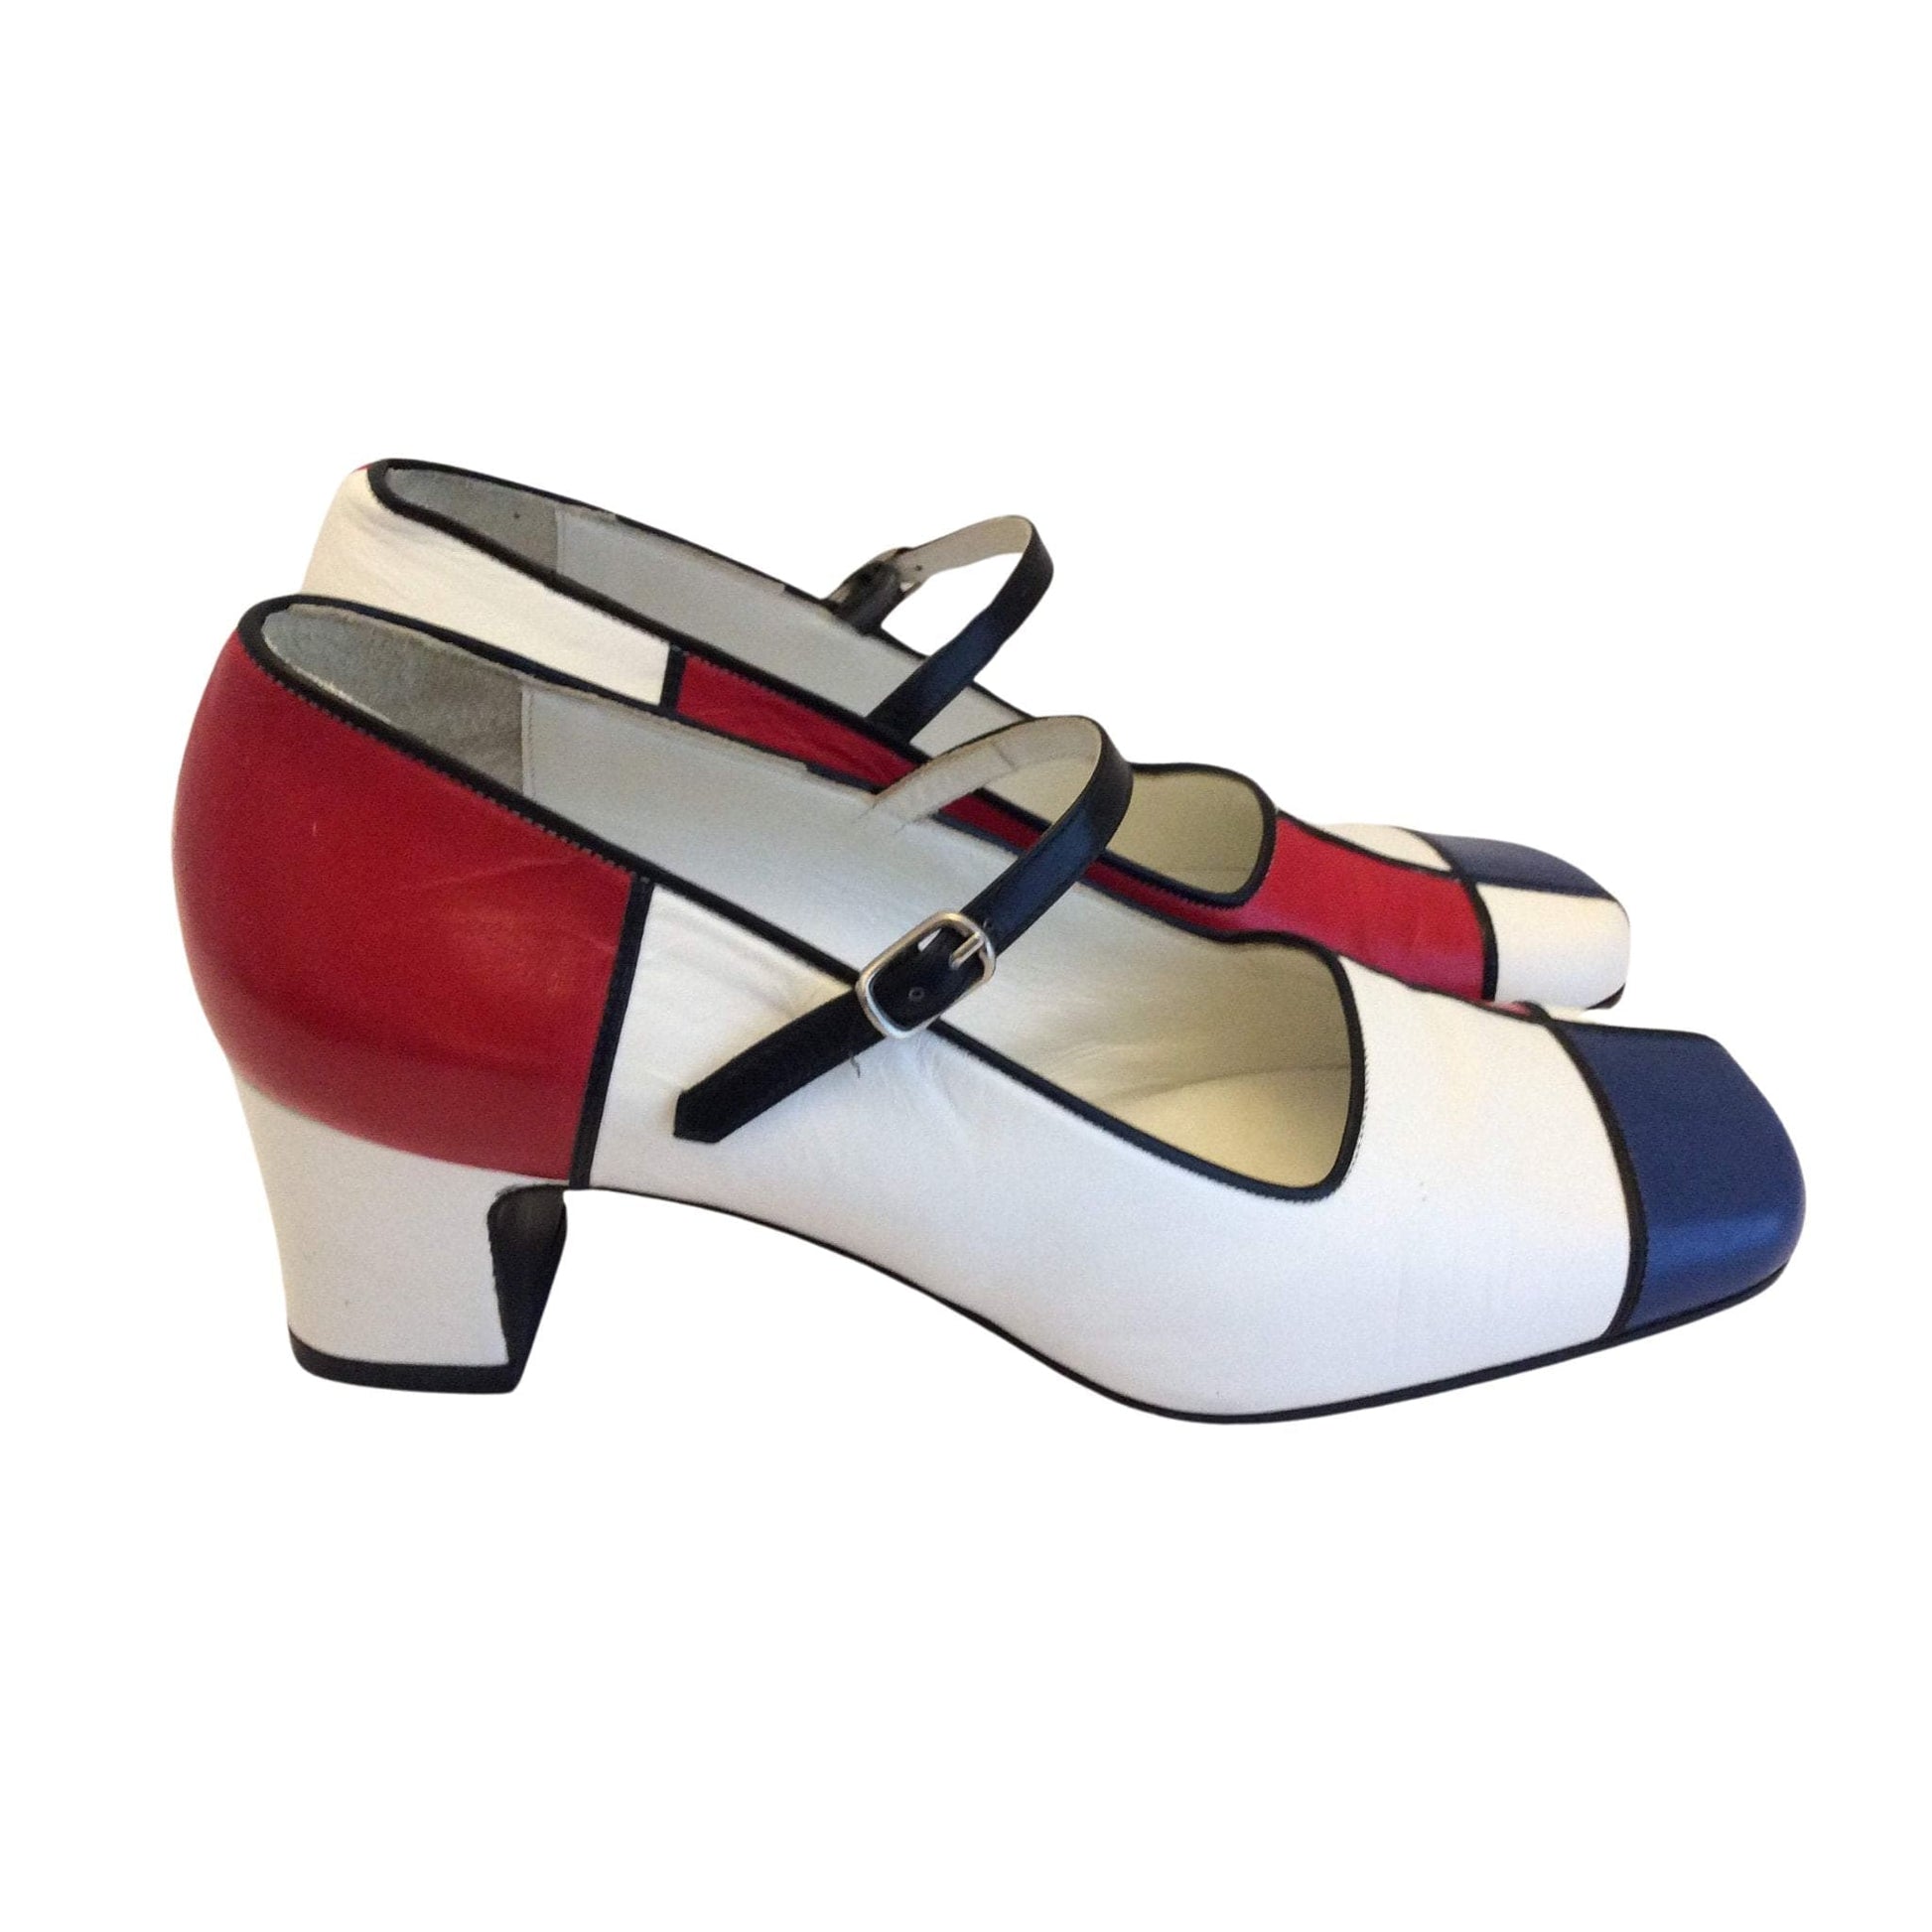 Patrick Cox Colorblock Shoes 7.5 / Multi / Mod